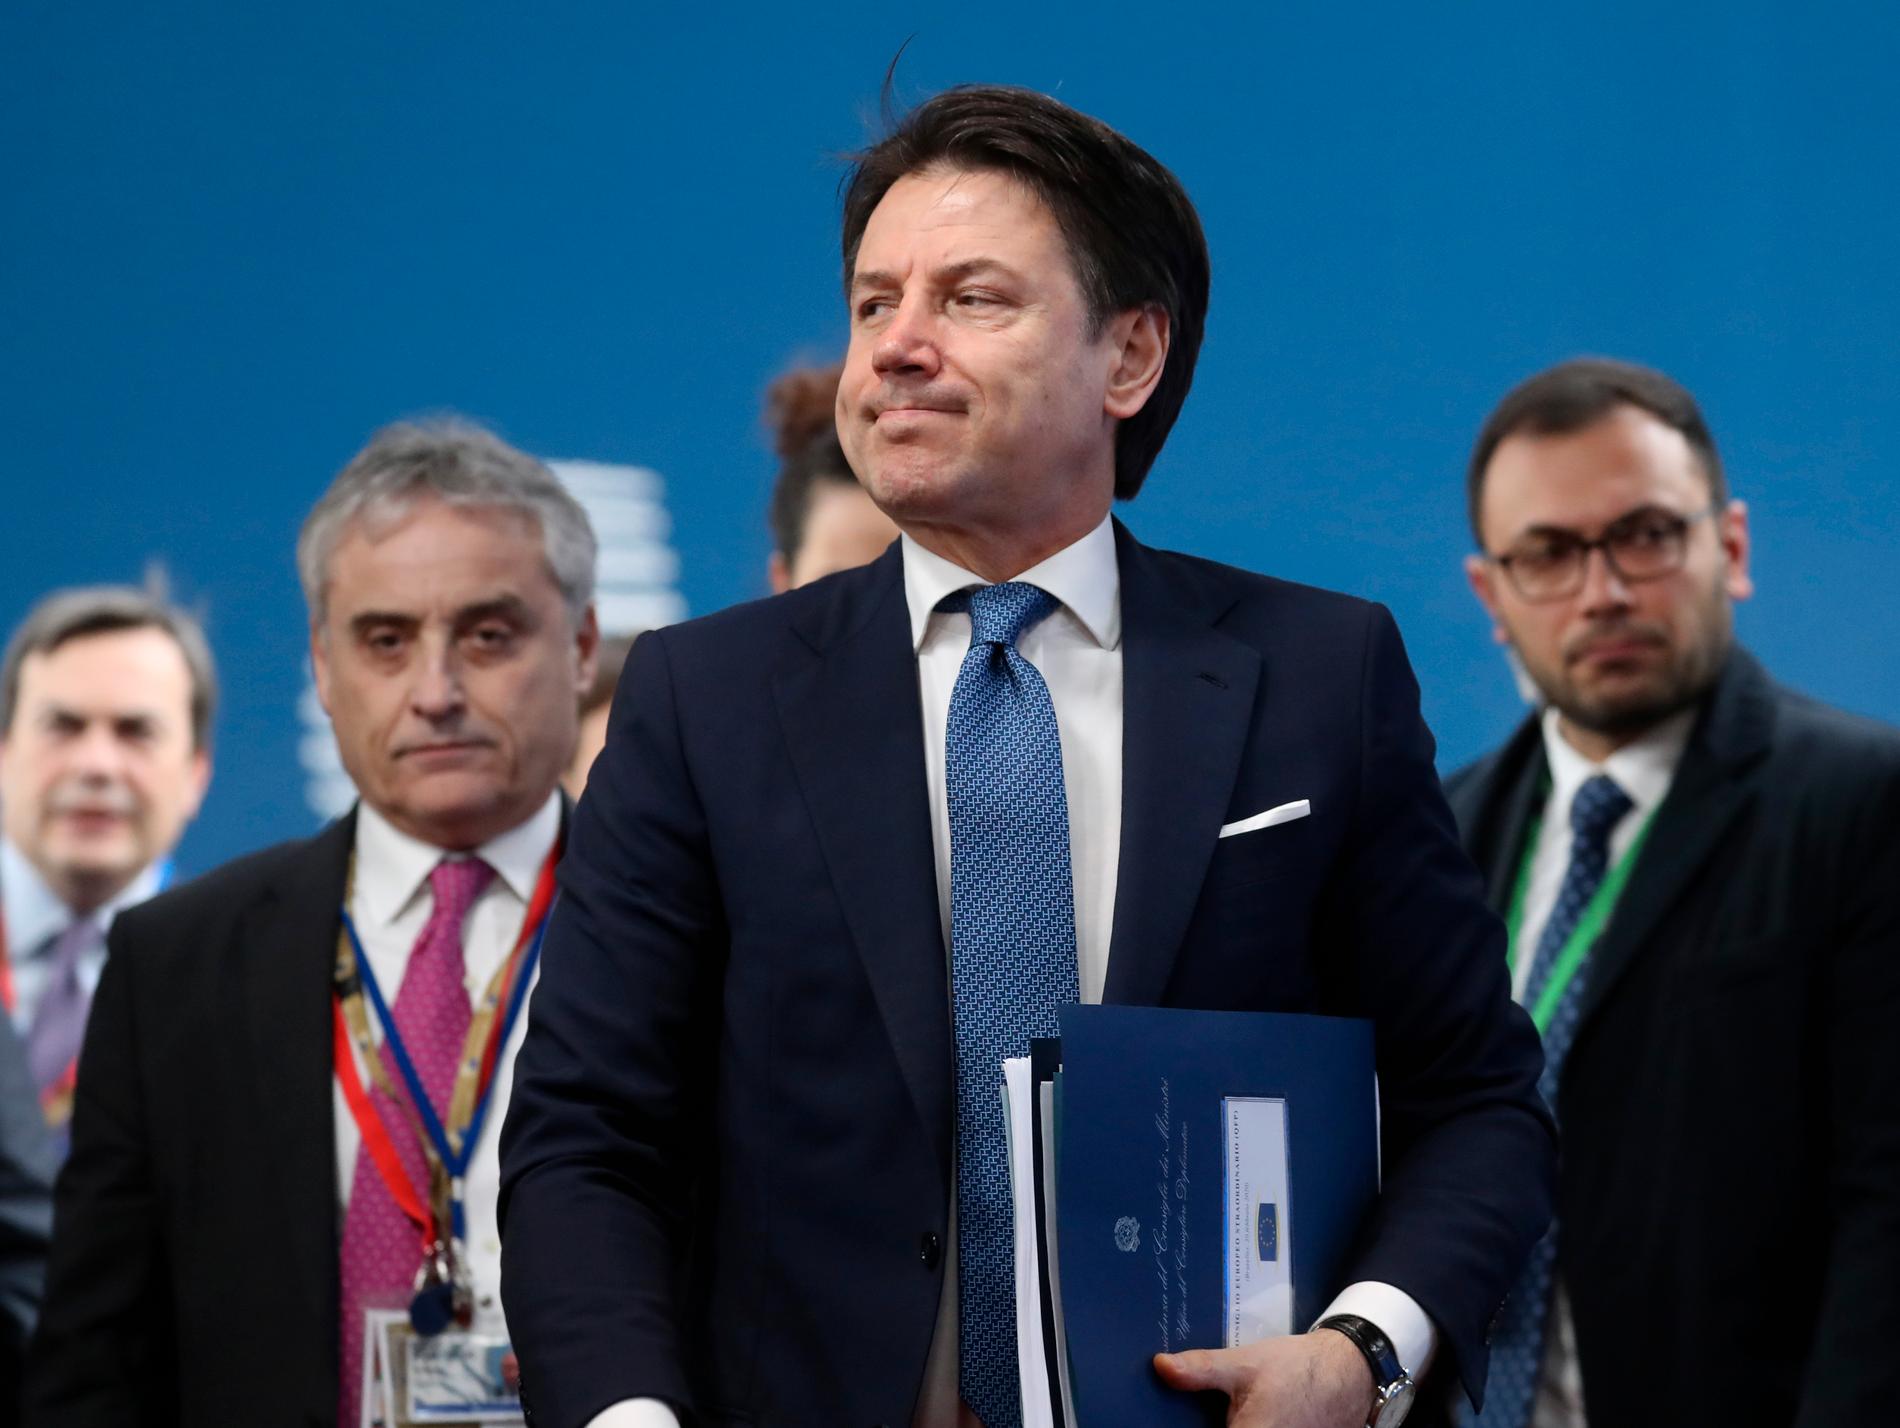 Italiens premiärminister Giuseppe Conte (mitten) lovar att ta fram ett förslag till en "mer ambitiös" EU-budget tillsammans med andra satsningsvilliga länder som Rumänien och Portugal. Arkivfoto.